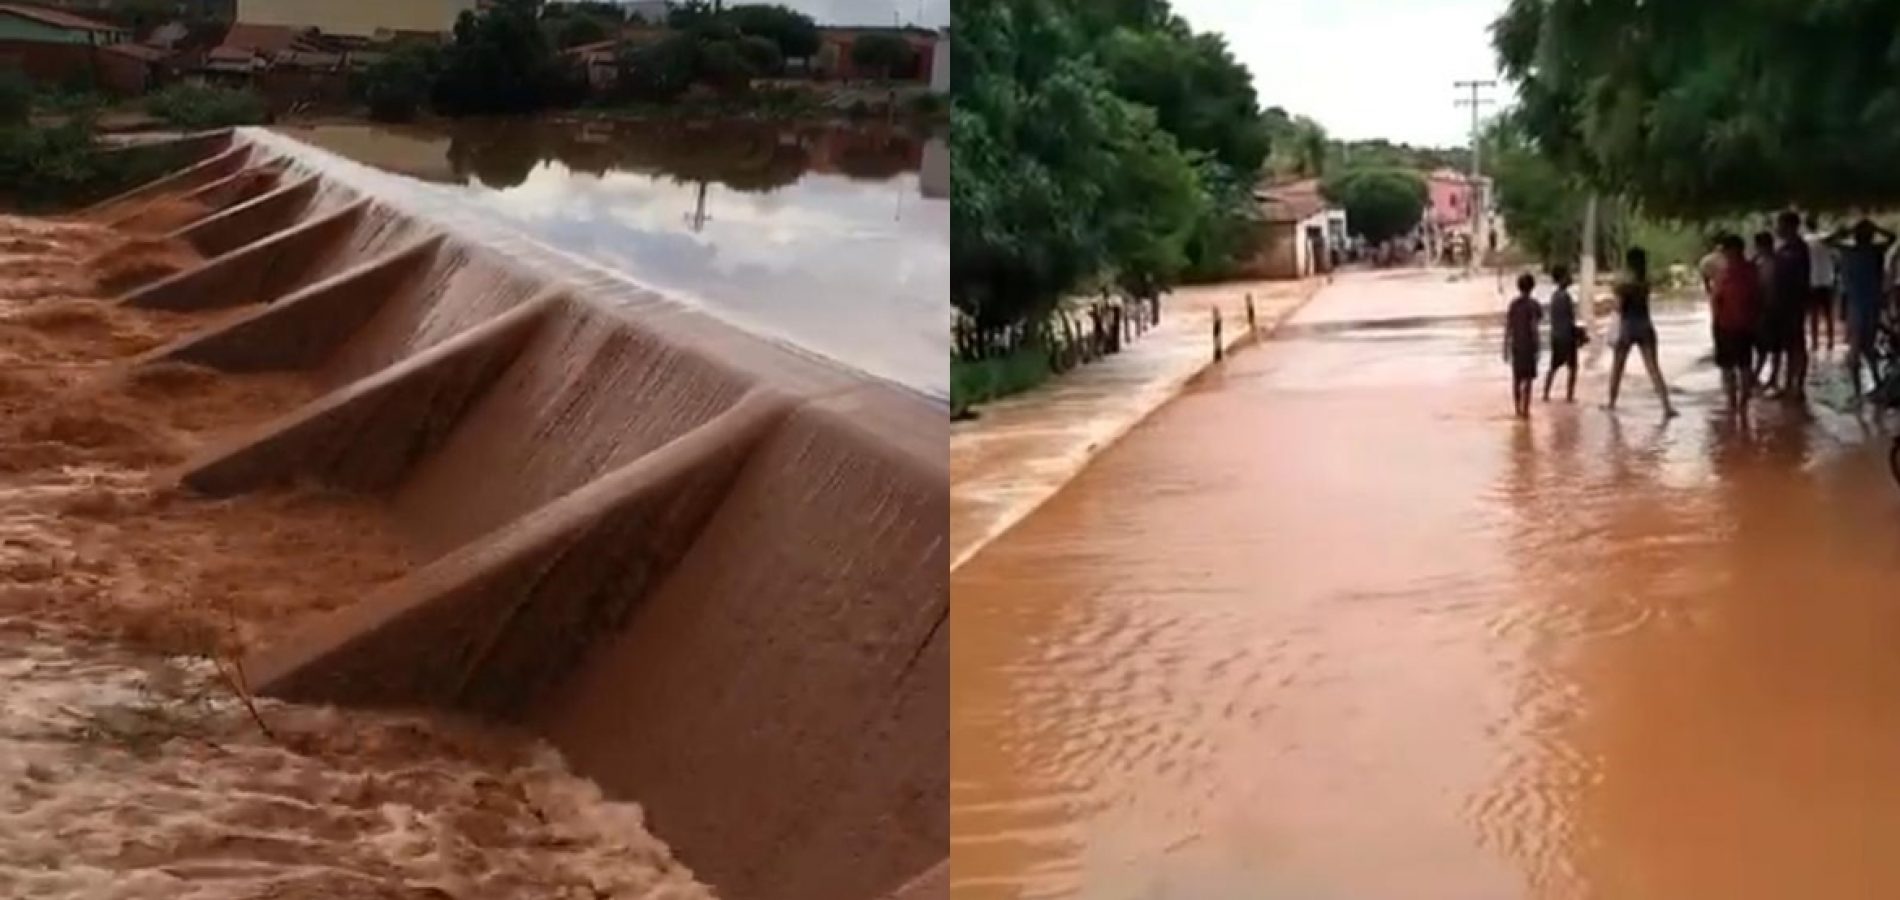 Fortes chuvas causam cheia em riachos e barragem transborda em Vera Mendes